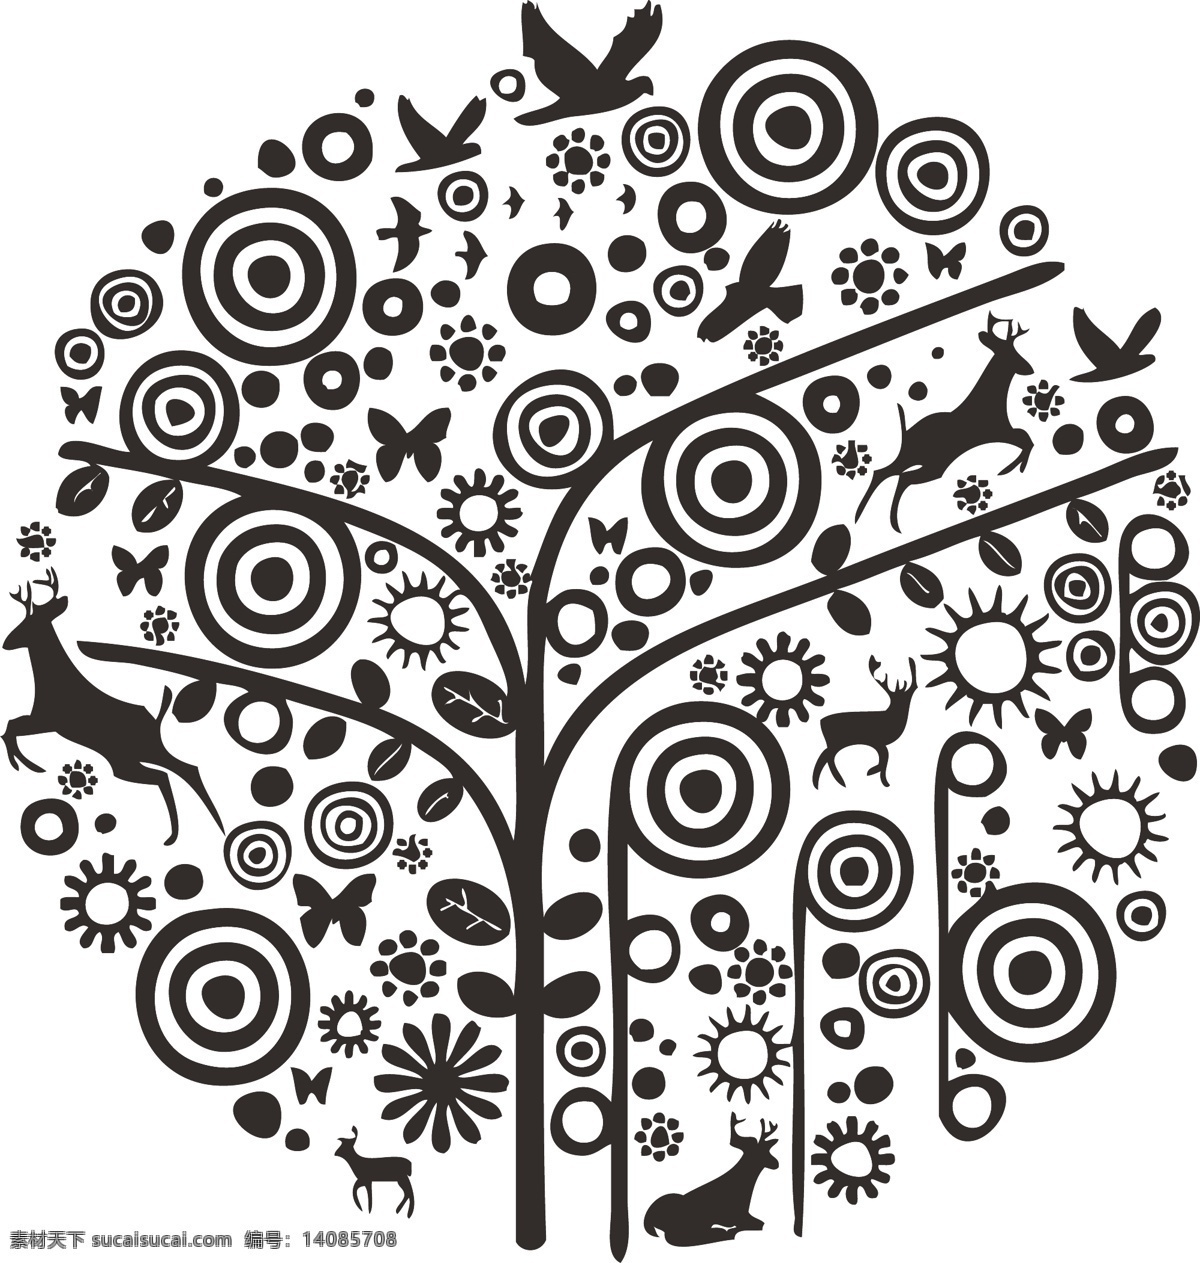 简单图形 简单 图形 插画 矢量 抽象 抽象树 插画树 树 图形树 底纹边框 抽象底纹